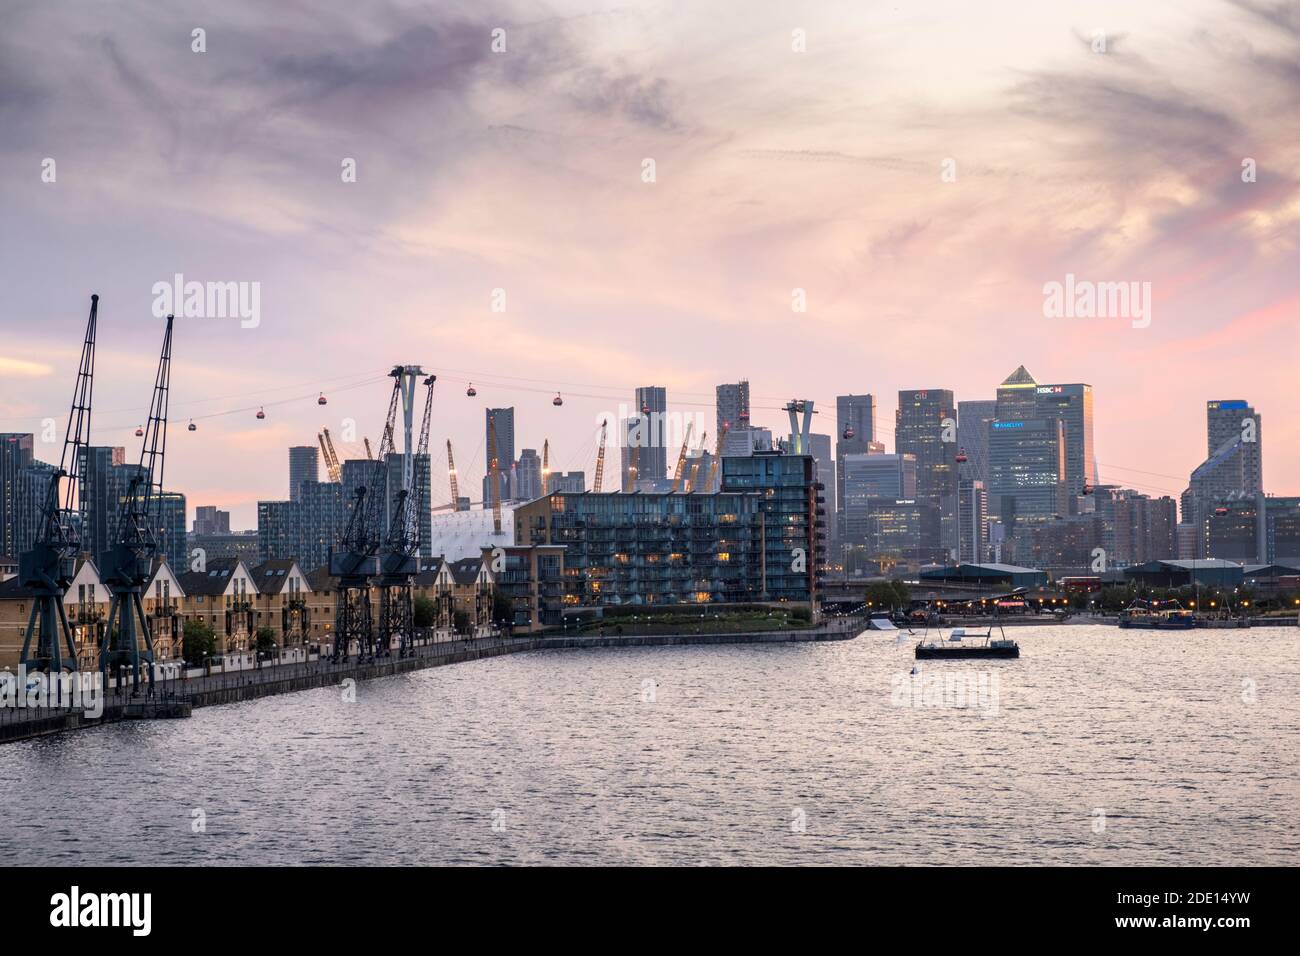 Perfil de Londres con el distrito financiero de Canary Wharf, el O2 Center Millennium Dome, el teleférico Emirates y el muelle Victoria, Londres Foto de stock